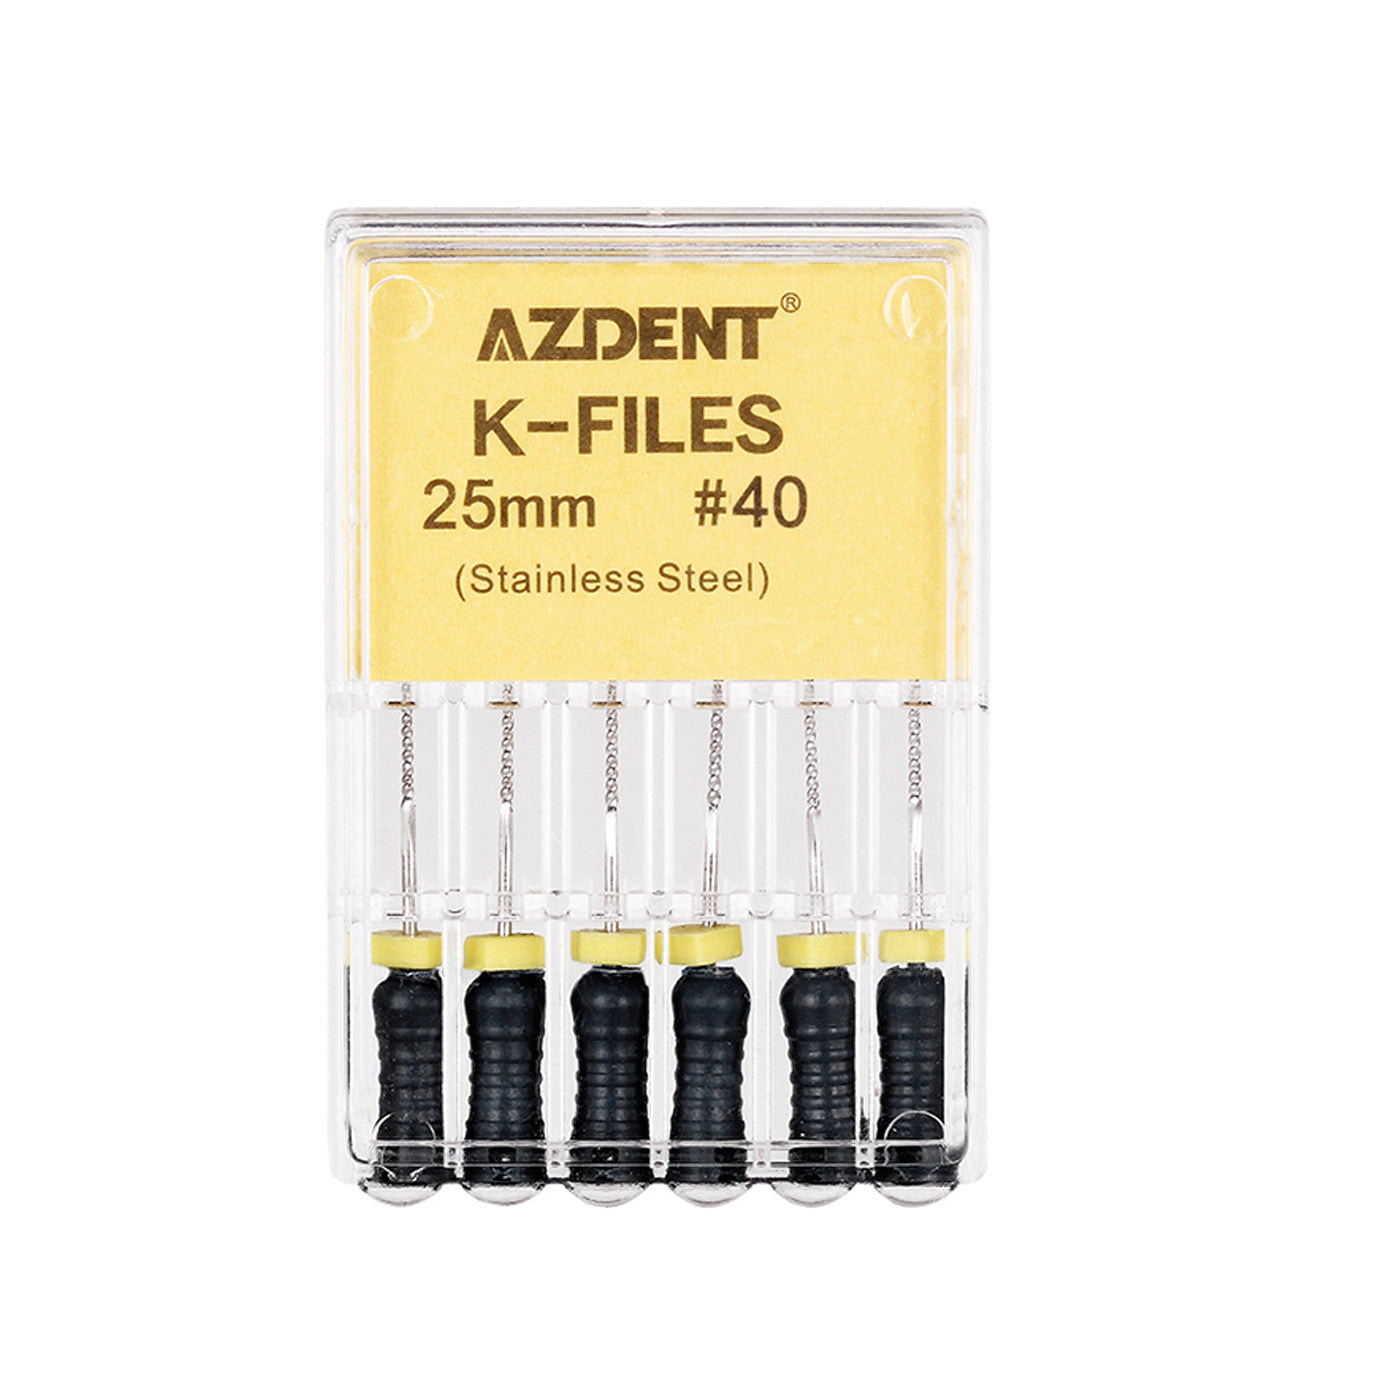 AZDENT Dental Hand K-Files Stainless Steel 25mm #40 Black 6pcs/Box-azdentall.com